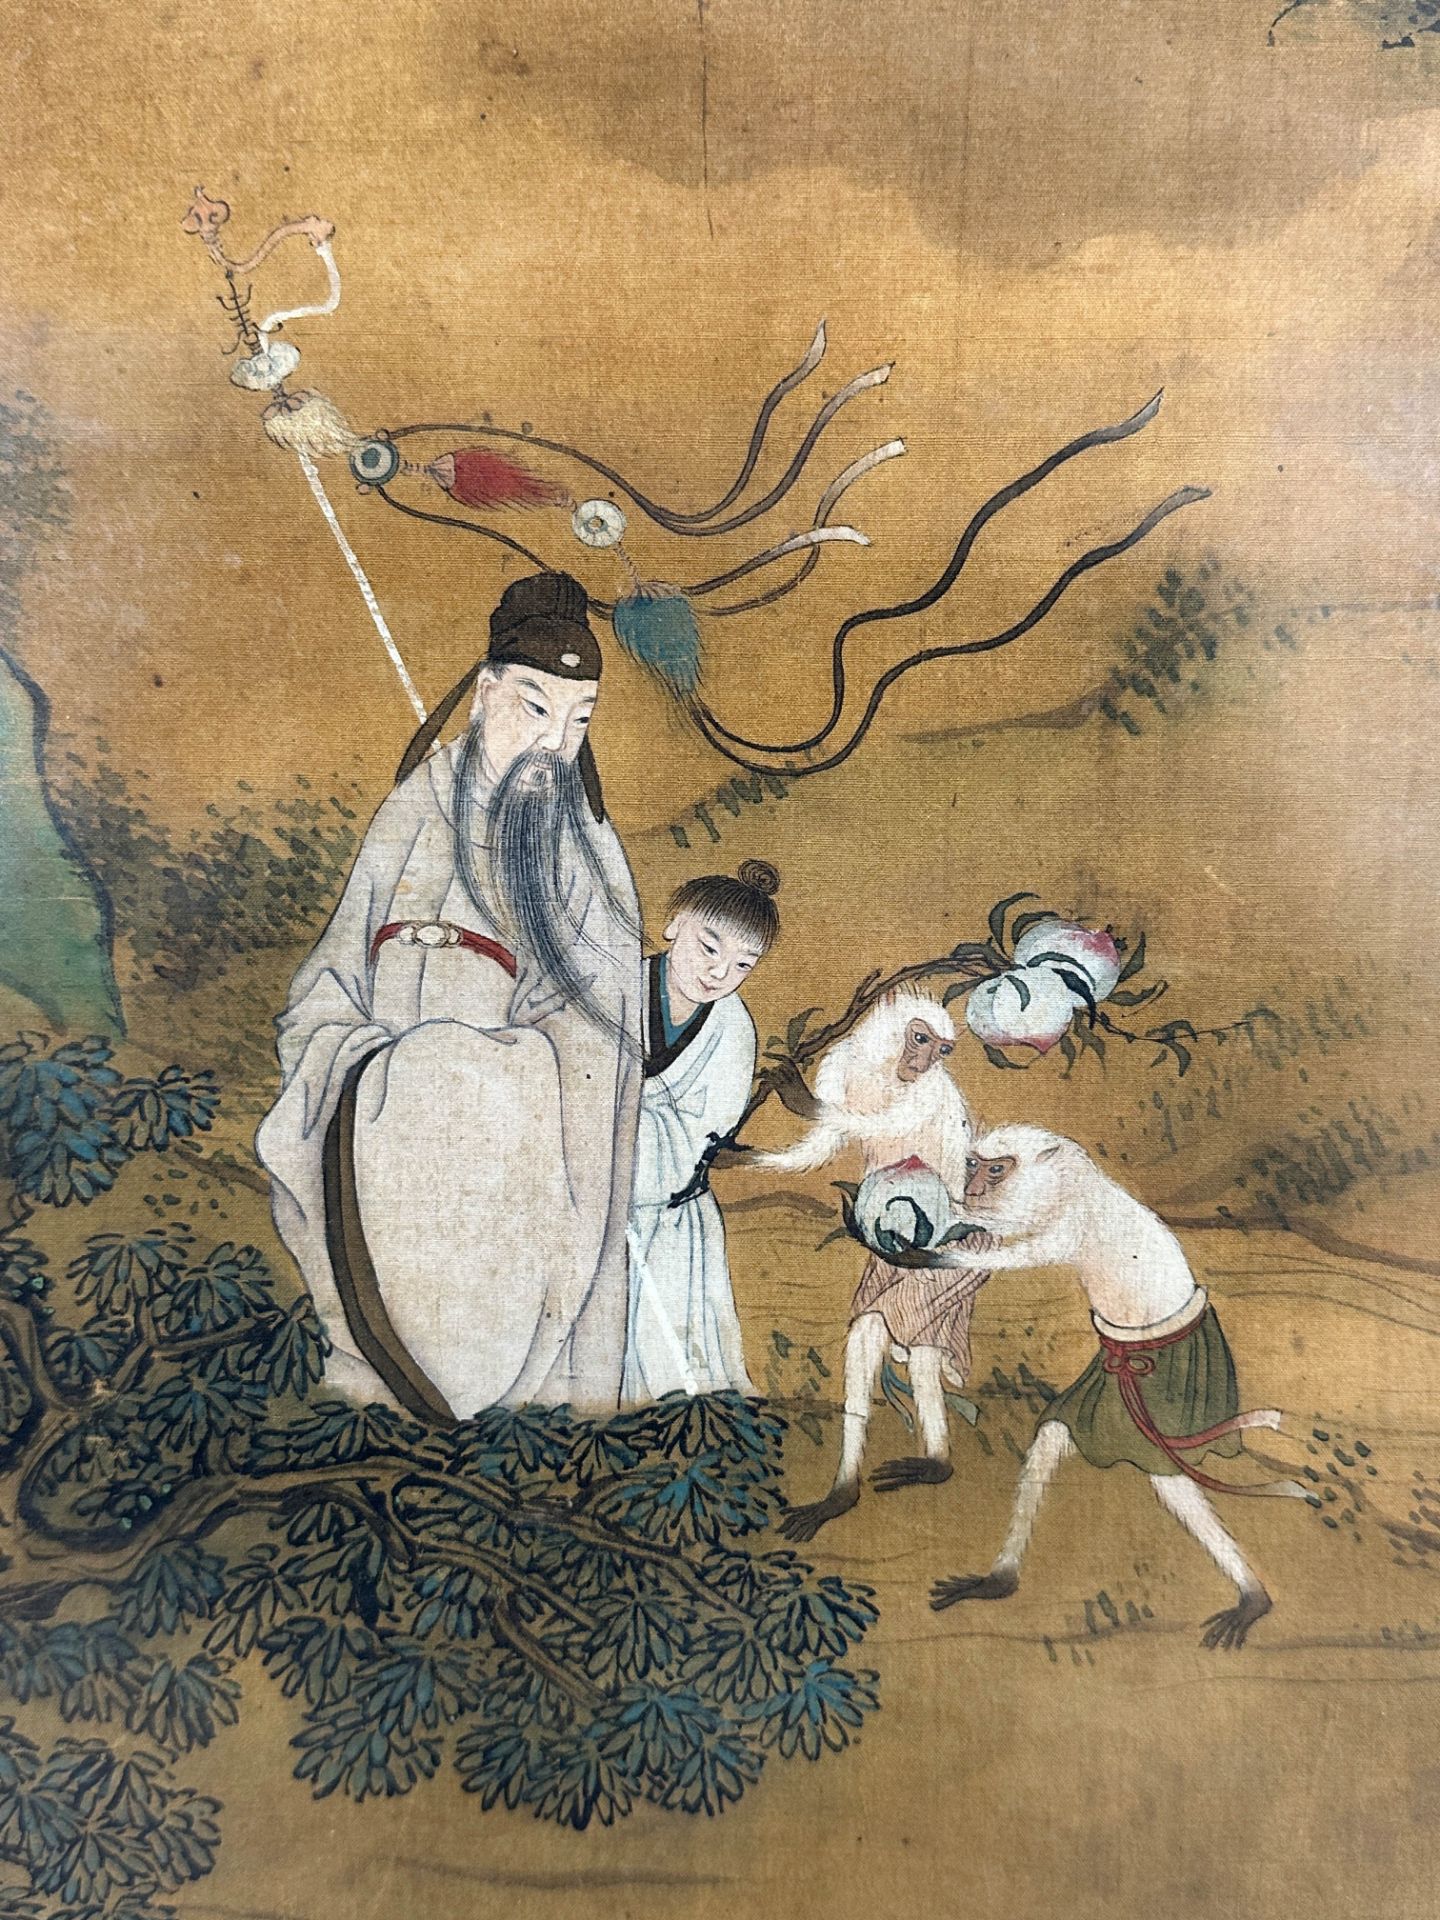 JIAO Bingzhen (1606 - 1687) zugeschrieben. Pfirsich und Glücksverheißung. - Bild 4 aus 6